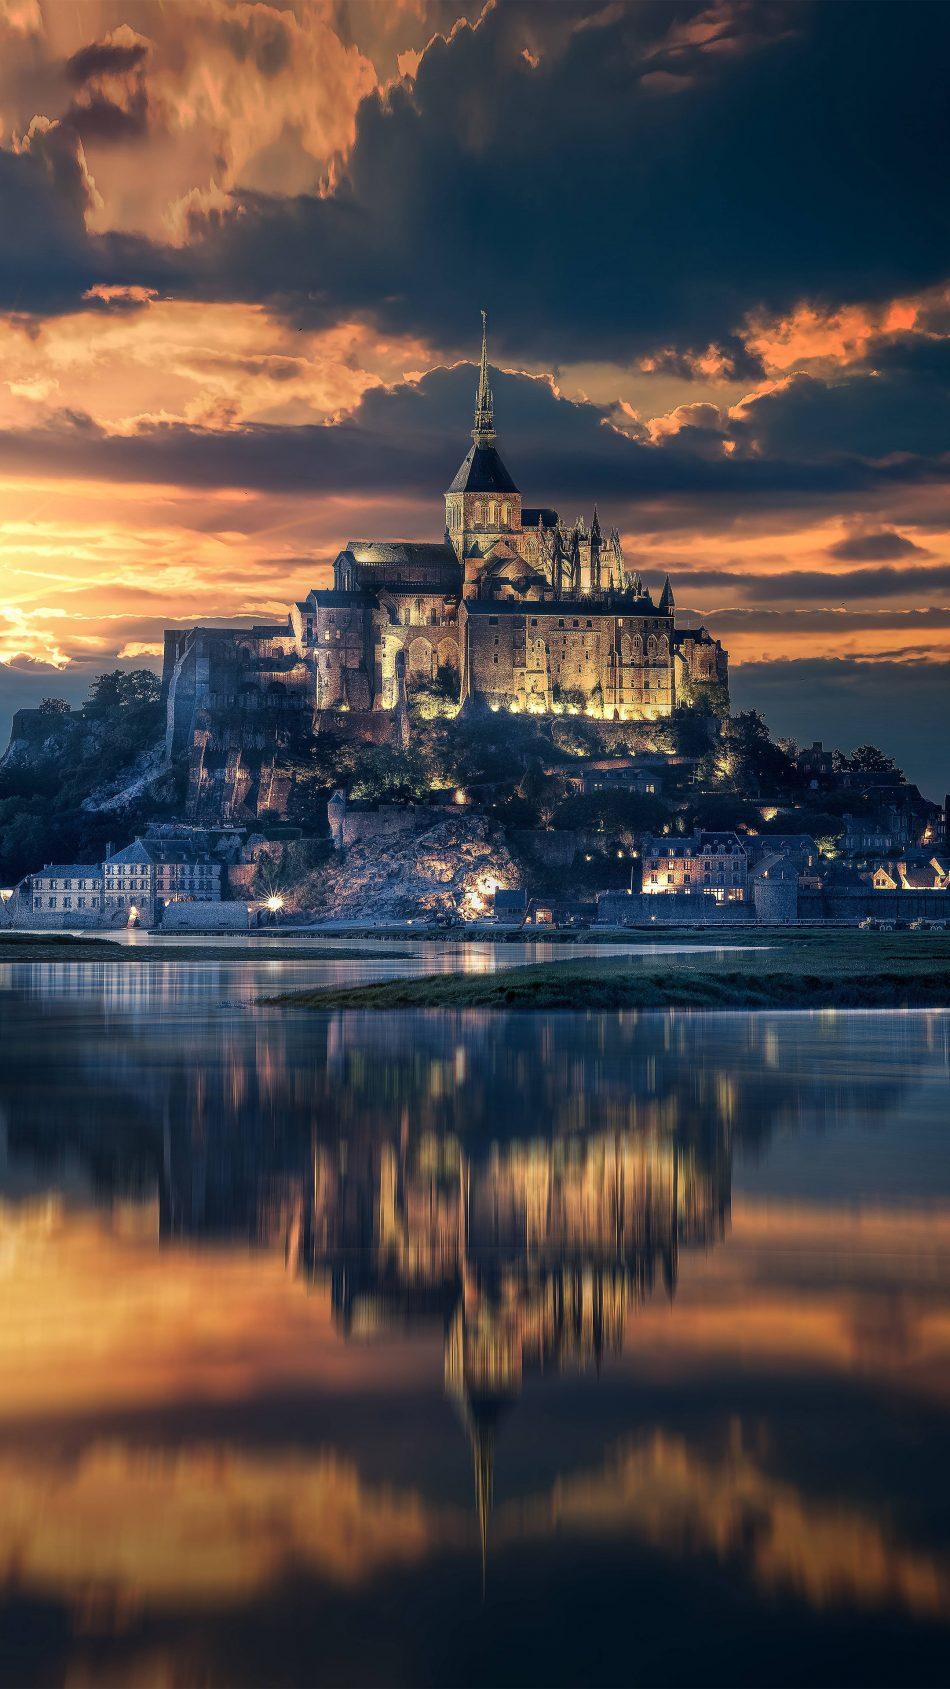 Mont Saint Michel France Sunset View 4k & Ultra HD Saint